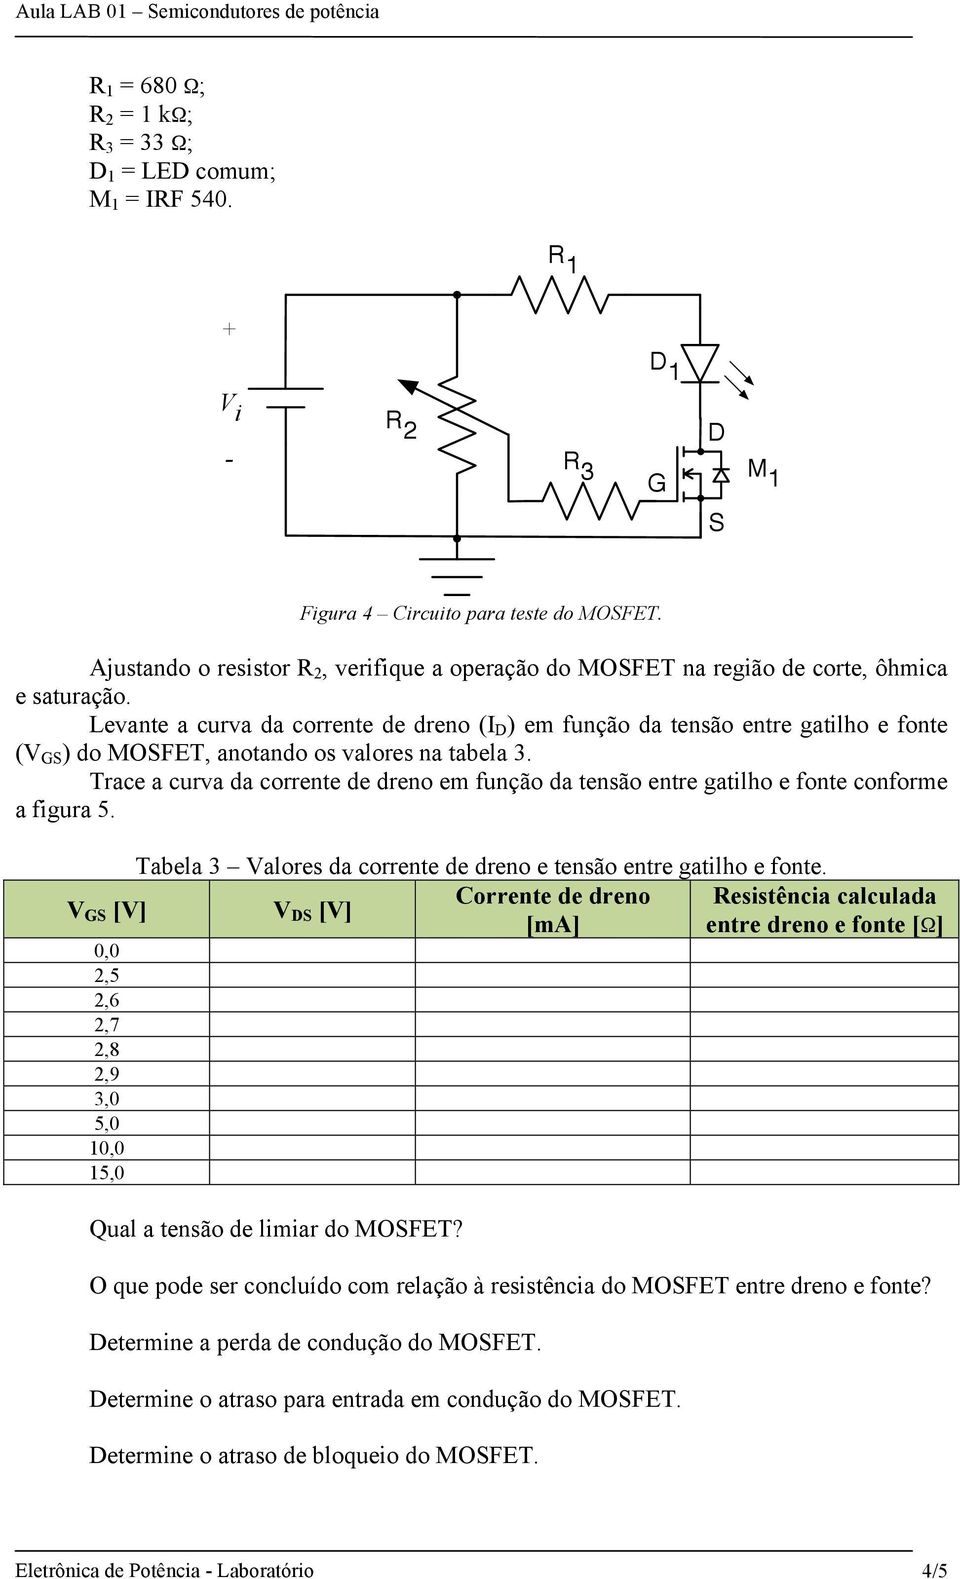 Levante a curva da corrente de dreno (I D ) em função da tensão entre gatilho e fonte (V S ) do MOSFET, anotando os valores na tabela 3.